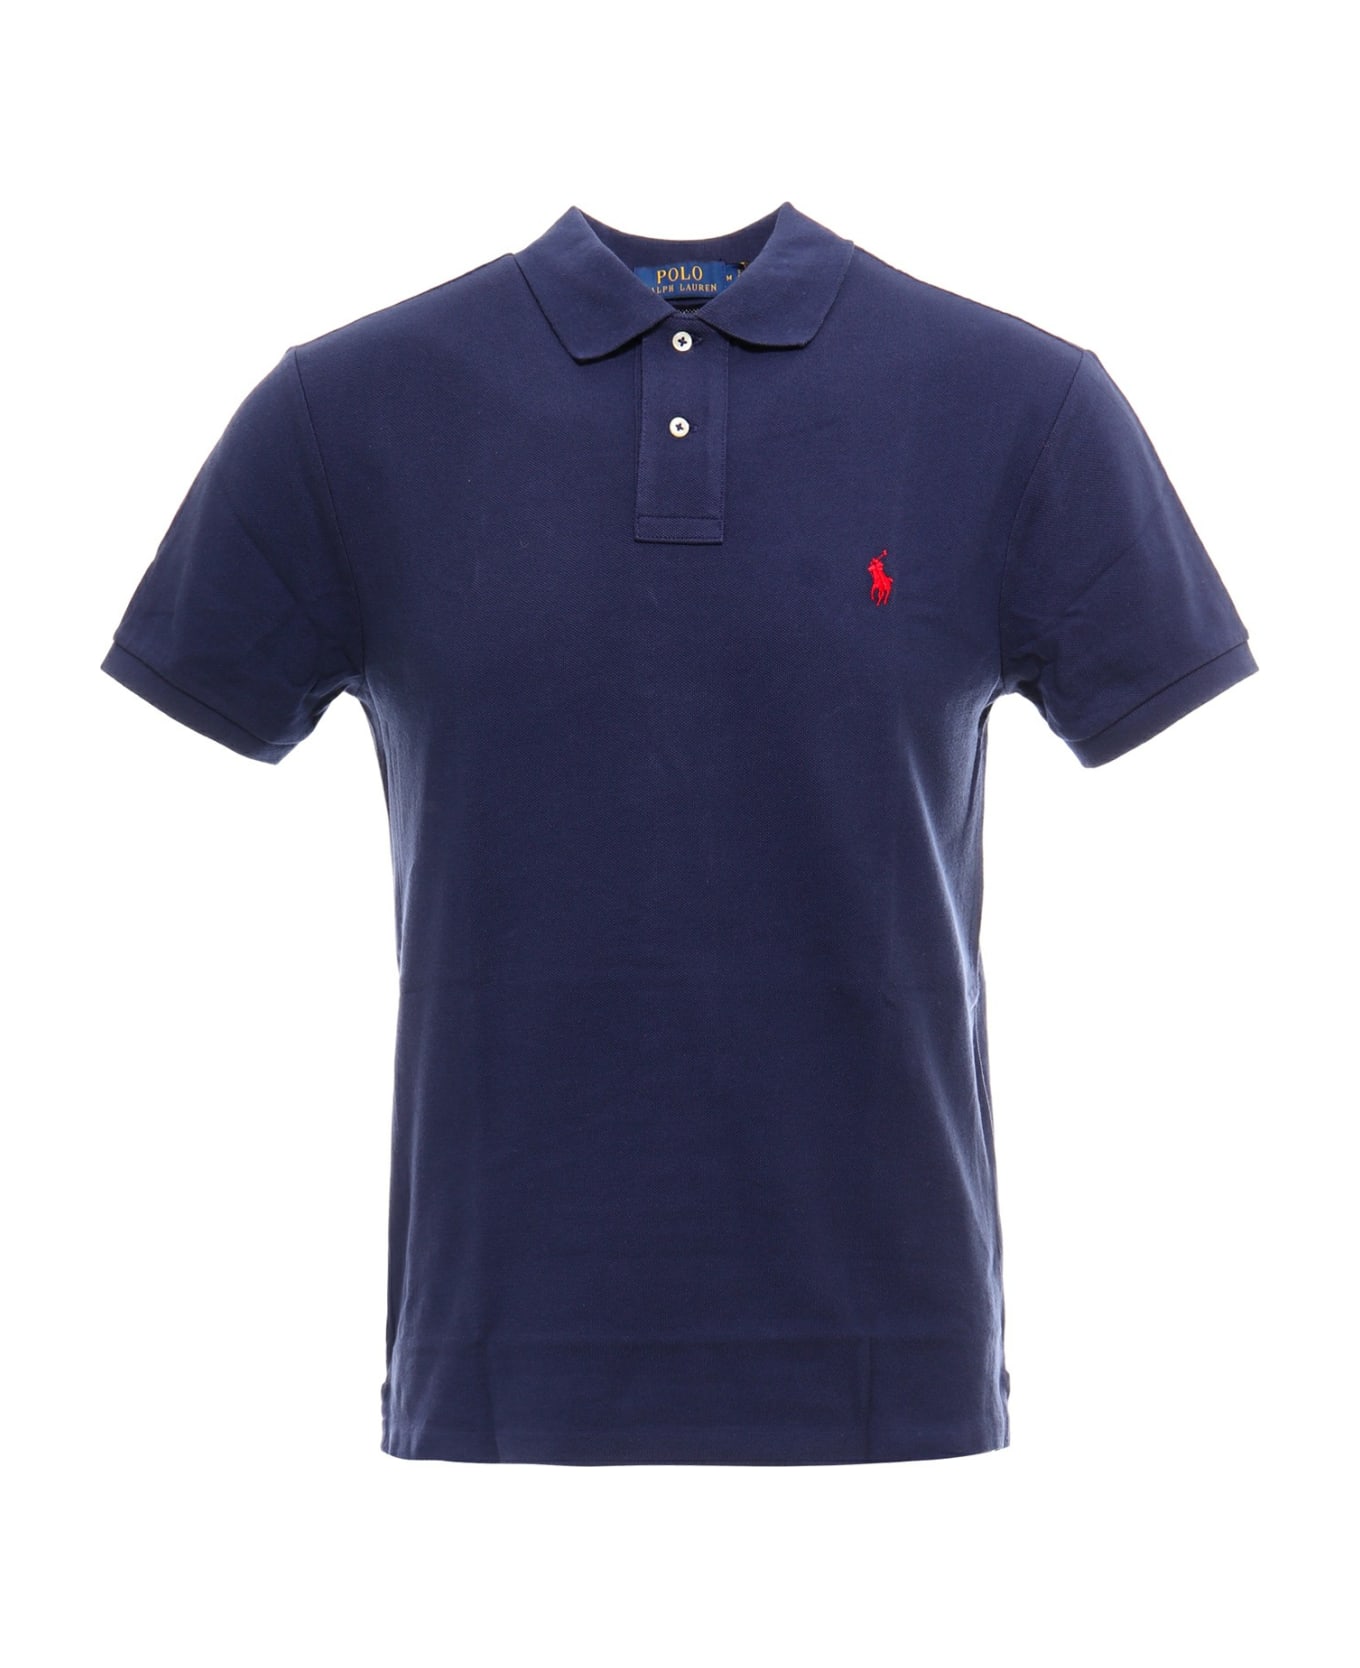 Polo Ralph Lauren Polo Shirt - Newport navy ポロシャツ